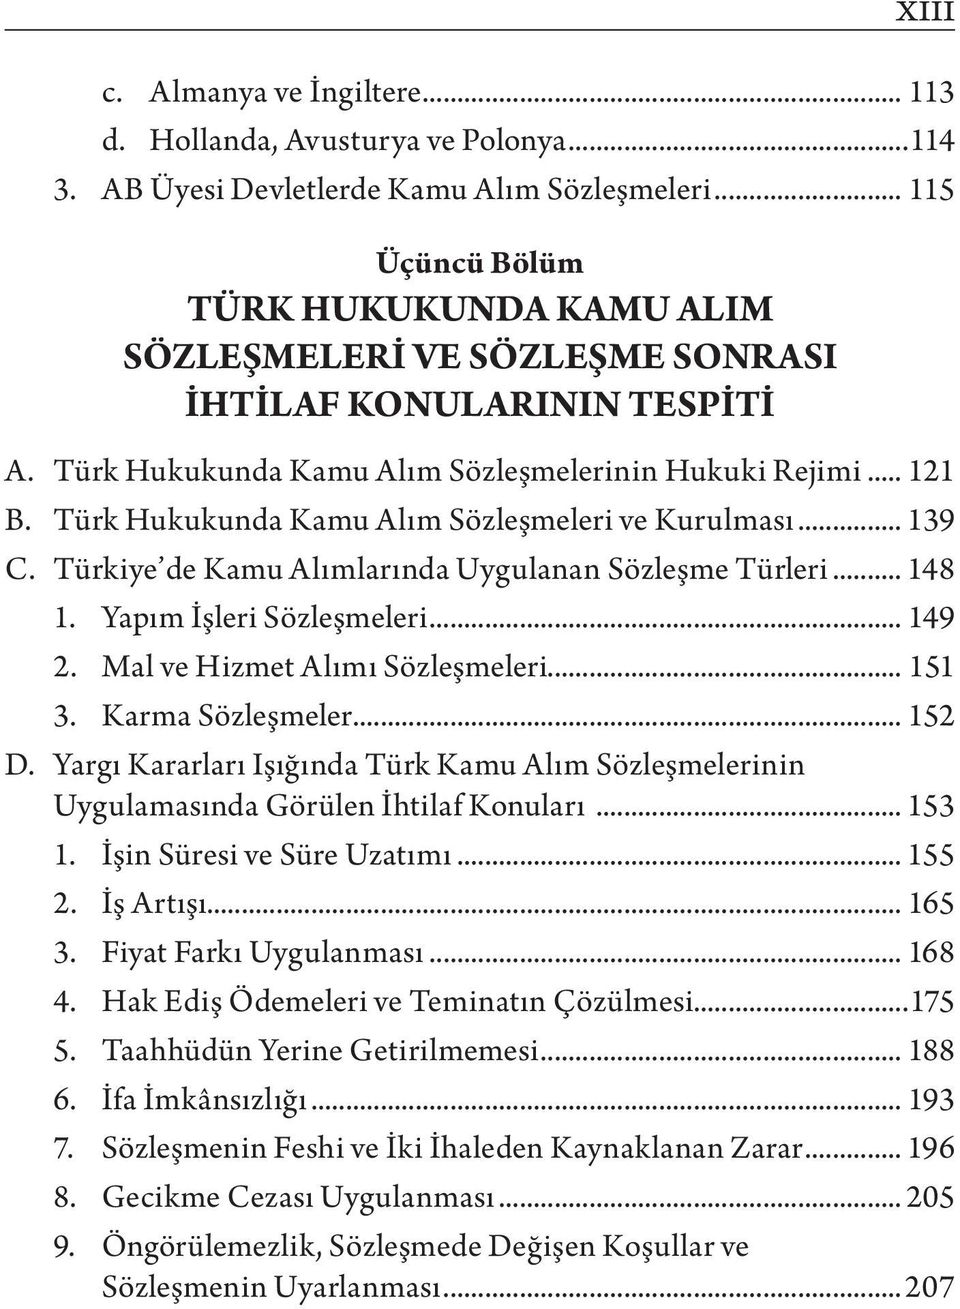 Türk Hukukunda Kamu Alım Sözleşmeleri ve Kurulması... 139 C. Türkiye de Kamu Alımlarında Uygulanan Sözleşme Türleri... 148 1. Yapım İşleri Sözleşmeleri... 149 2. Mal ve Hizmet Alımı Sözleşmeleri.